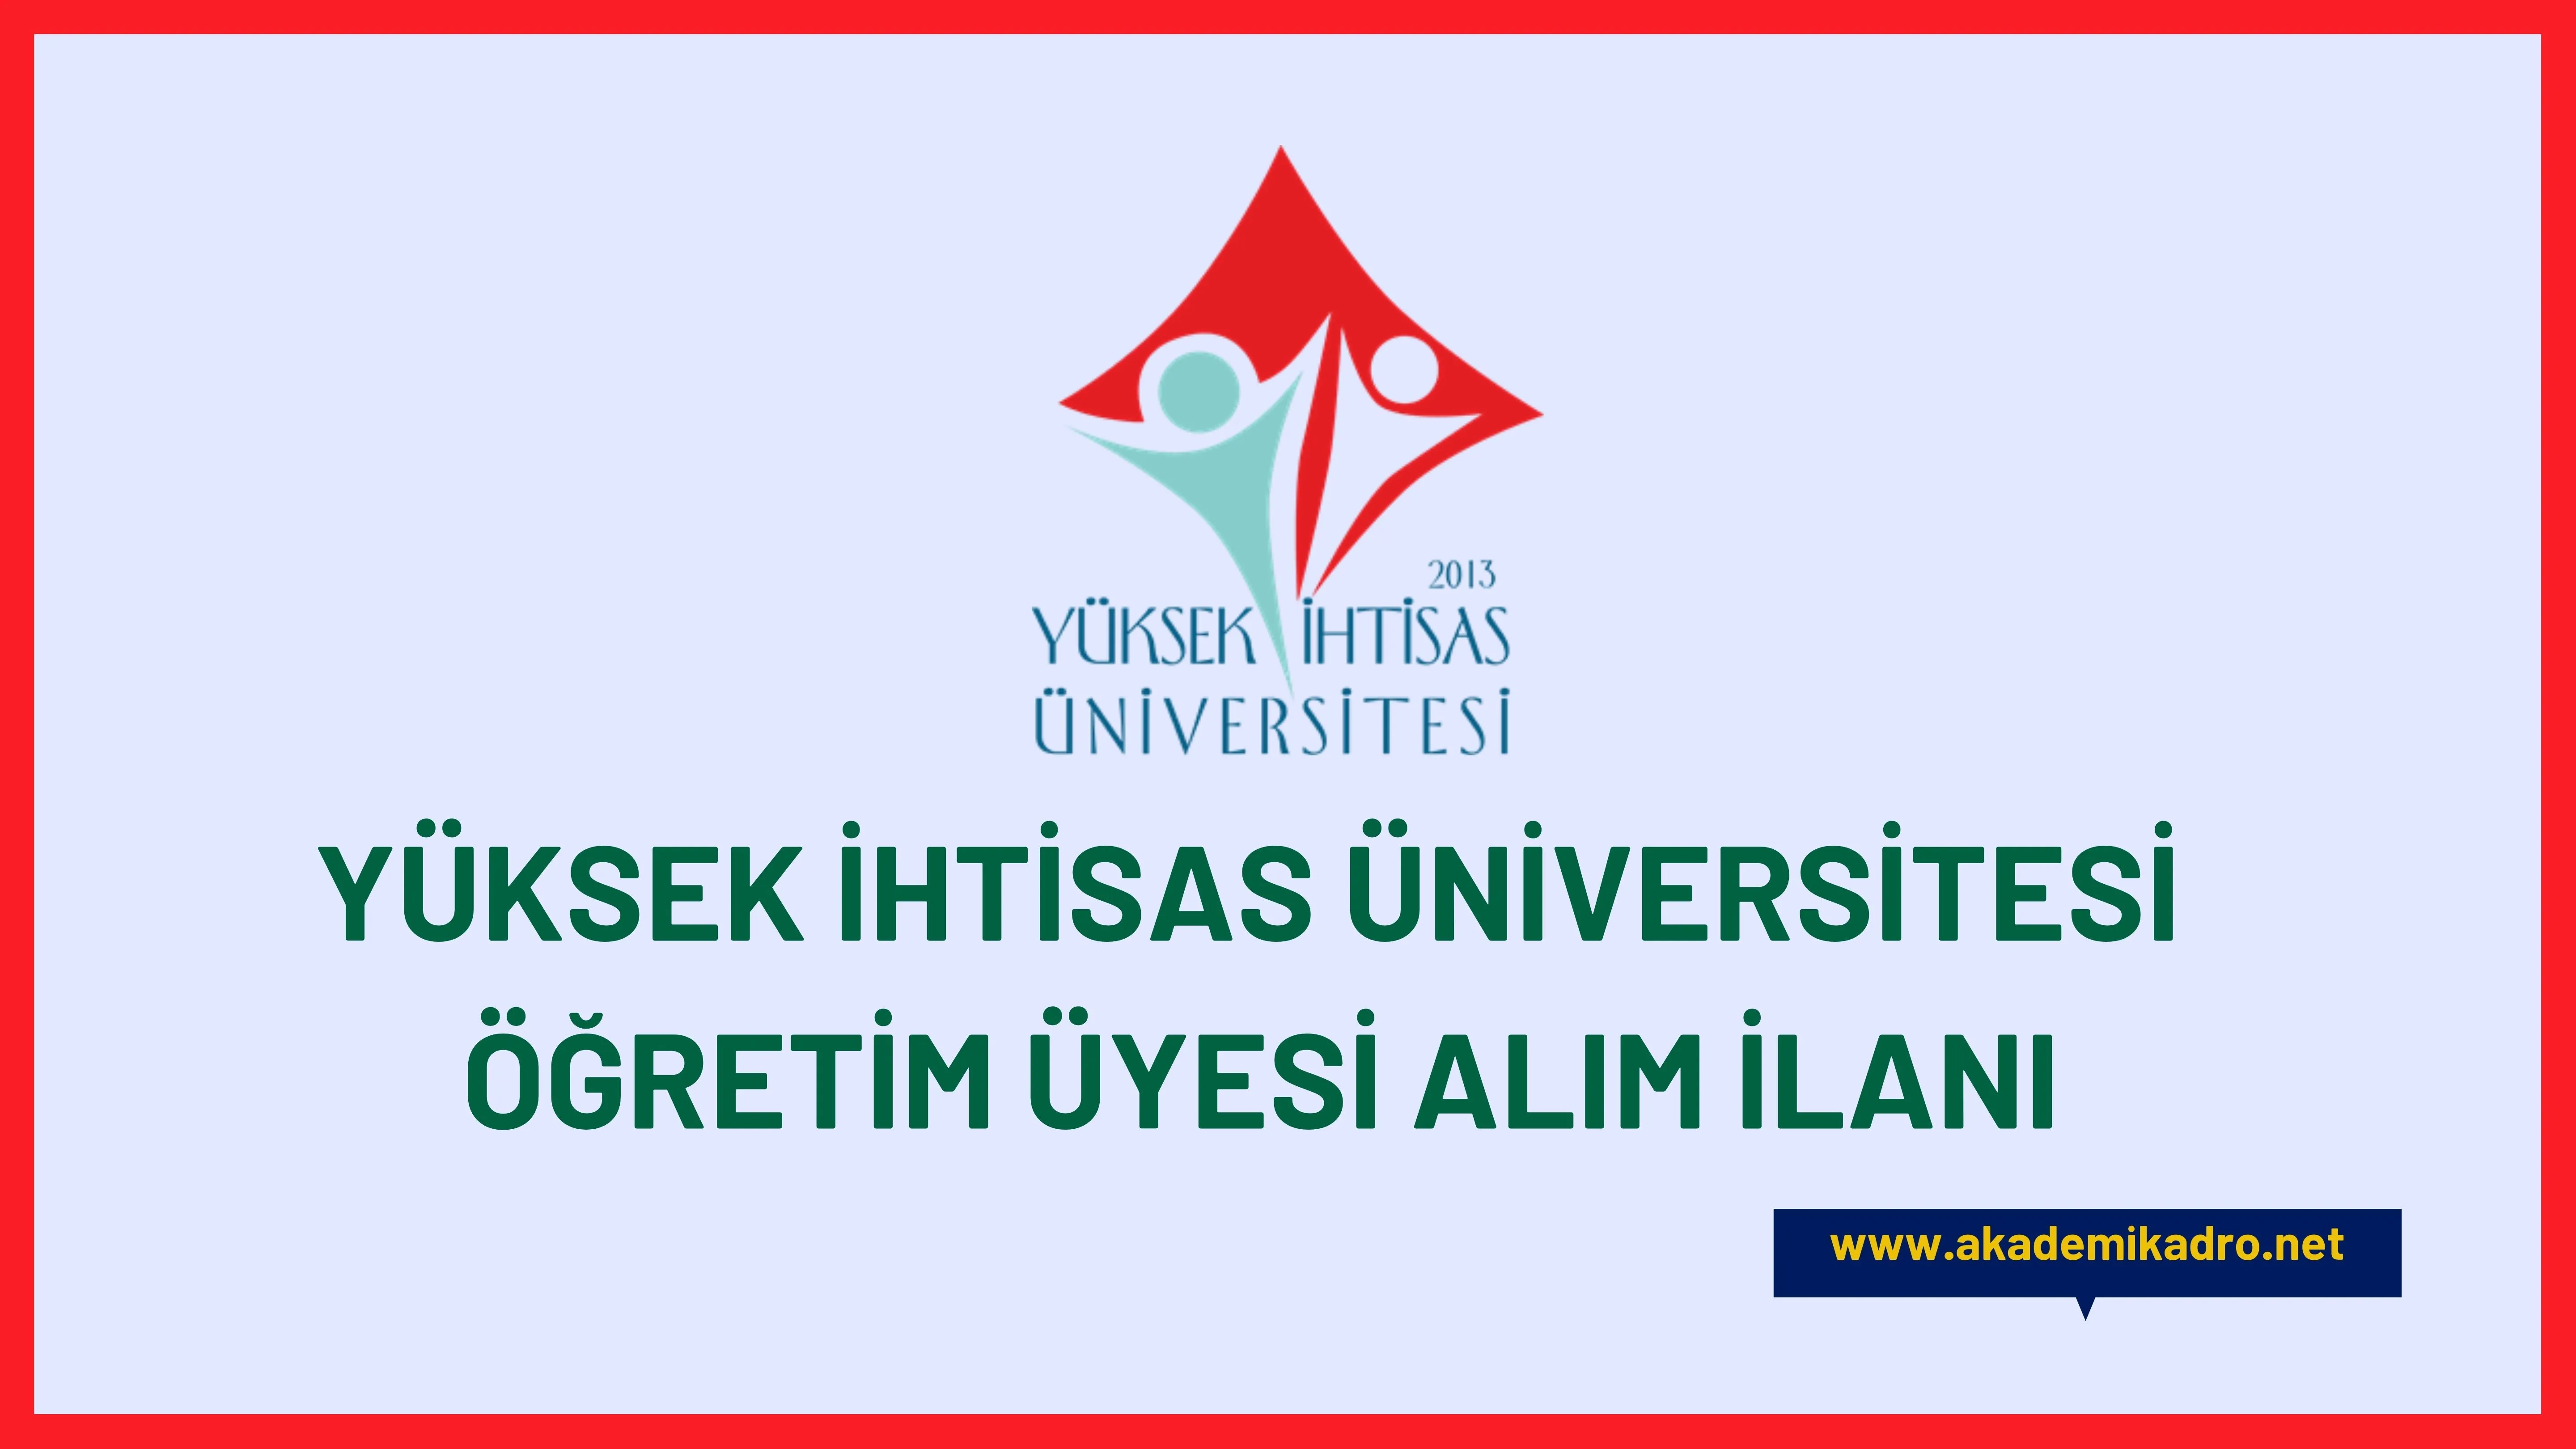 Yüksek İhtisas Üniversitesi birçok alandan 11 Öğretim üyesi alacak. 